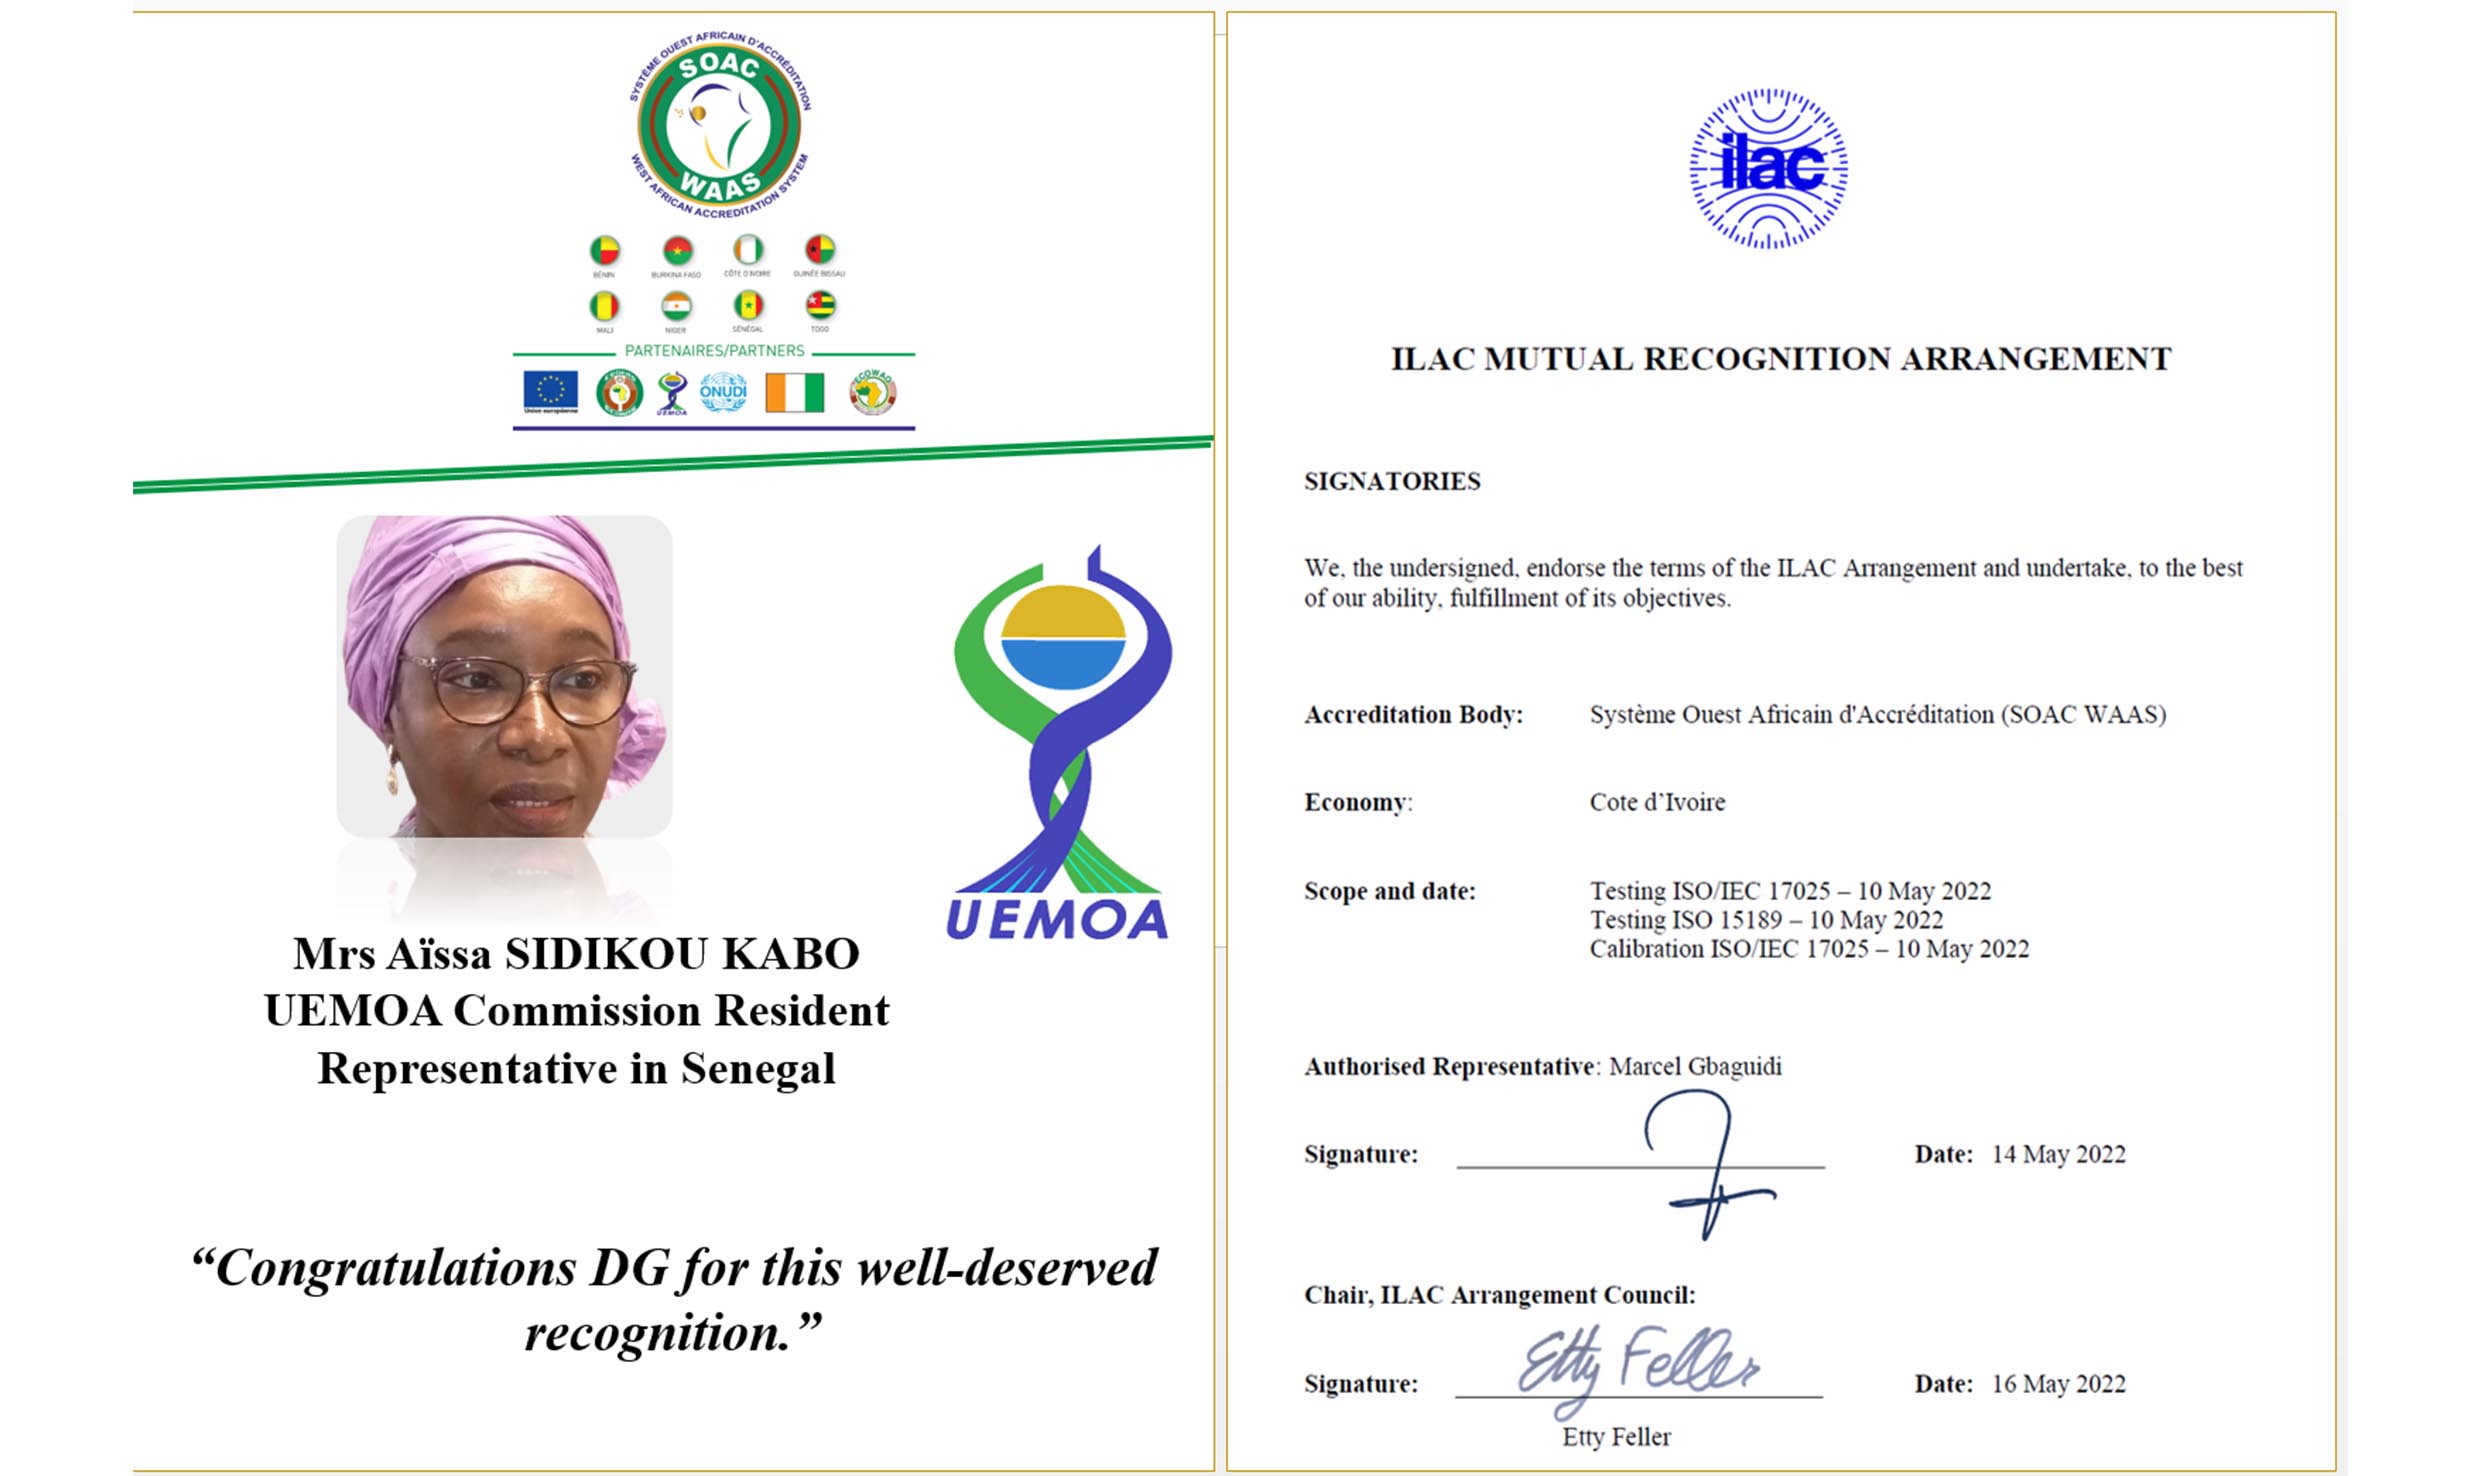 Mme Aïssa SIDIKOU KABO, Représentante Résidente de la Commission de l’UEMOA au Sénégal